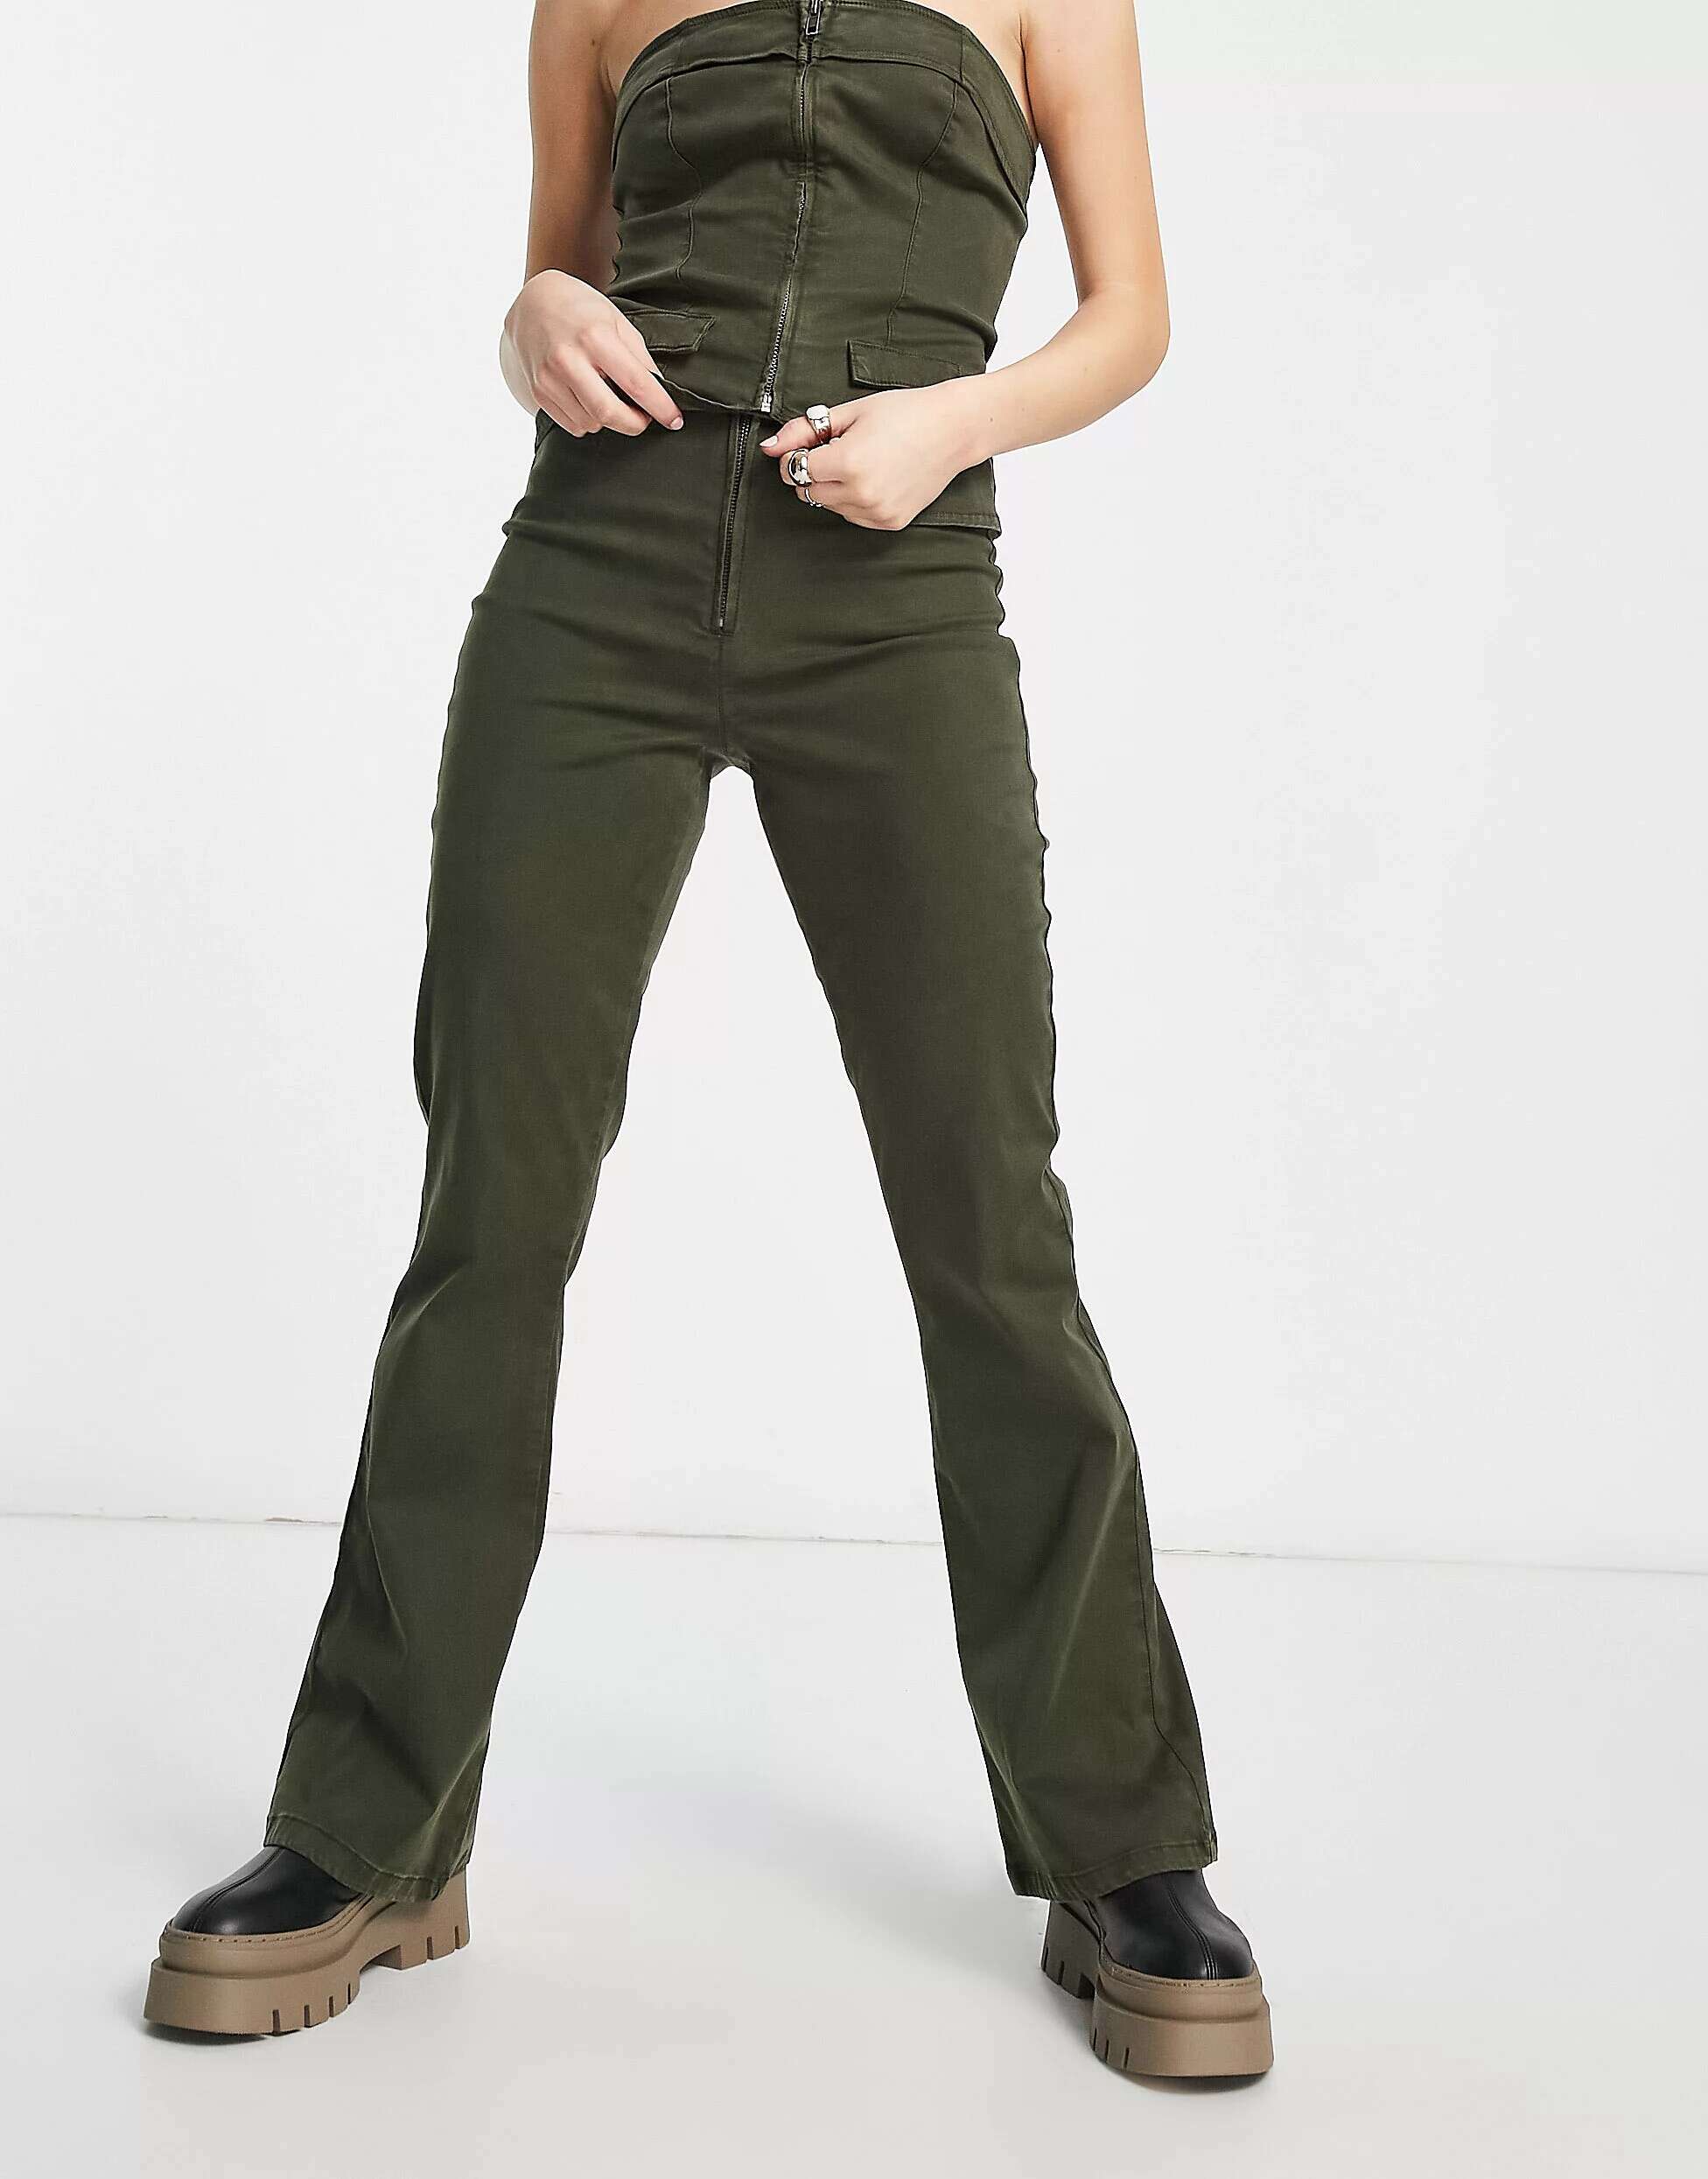 Узкие брюки цвета хаки с молнией и карманом ASOS